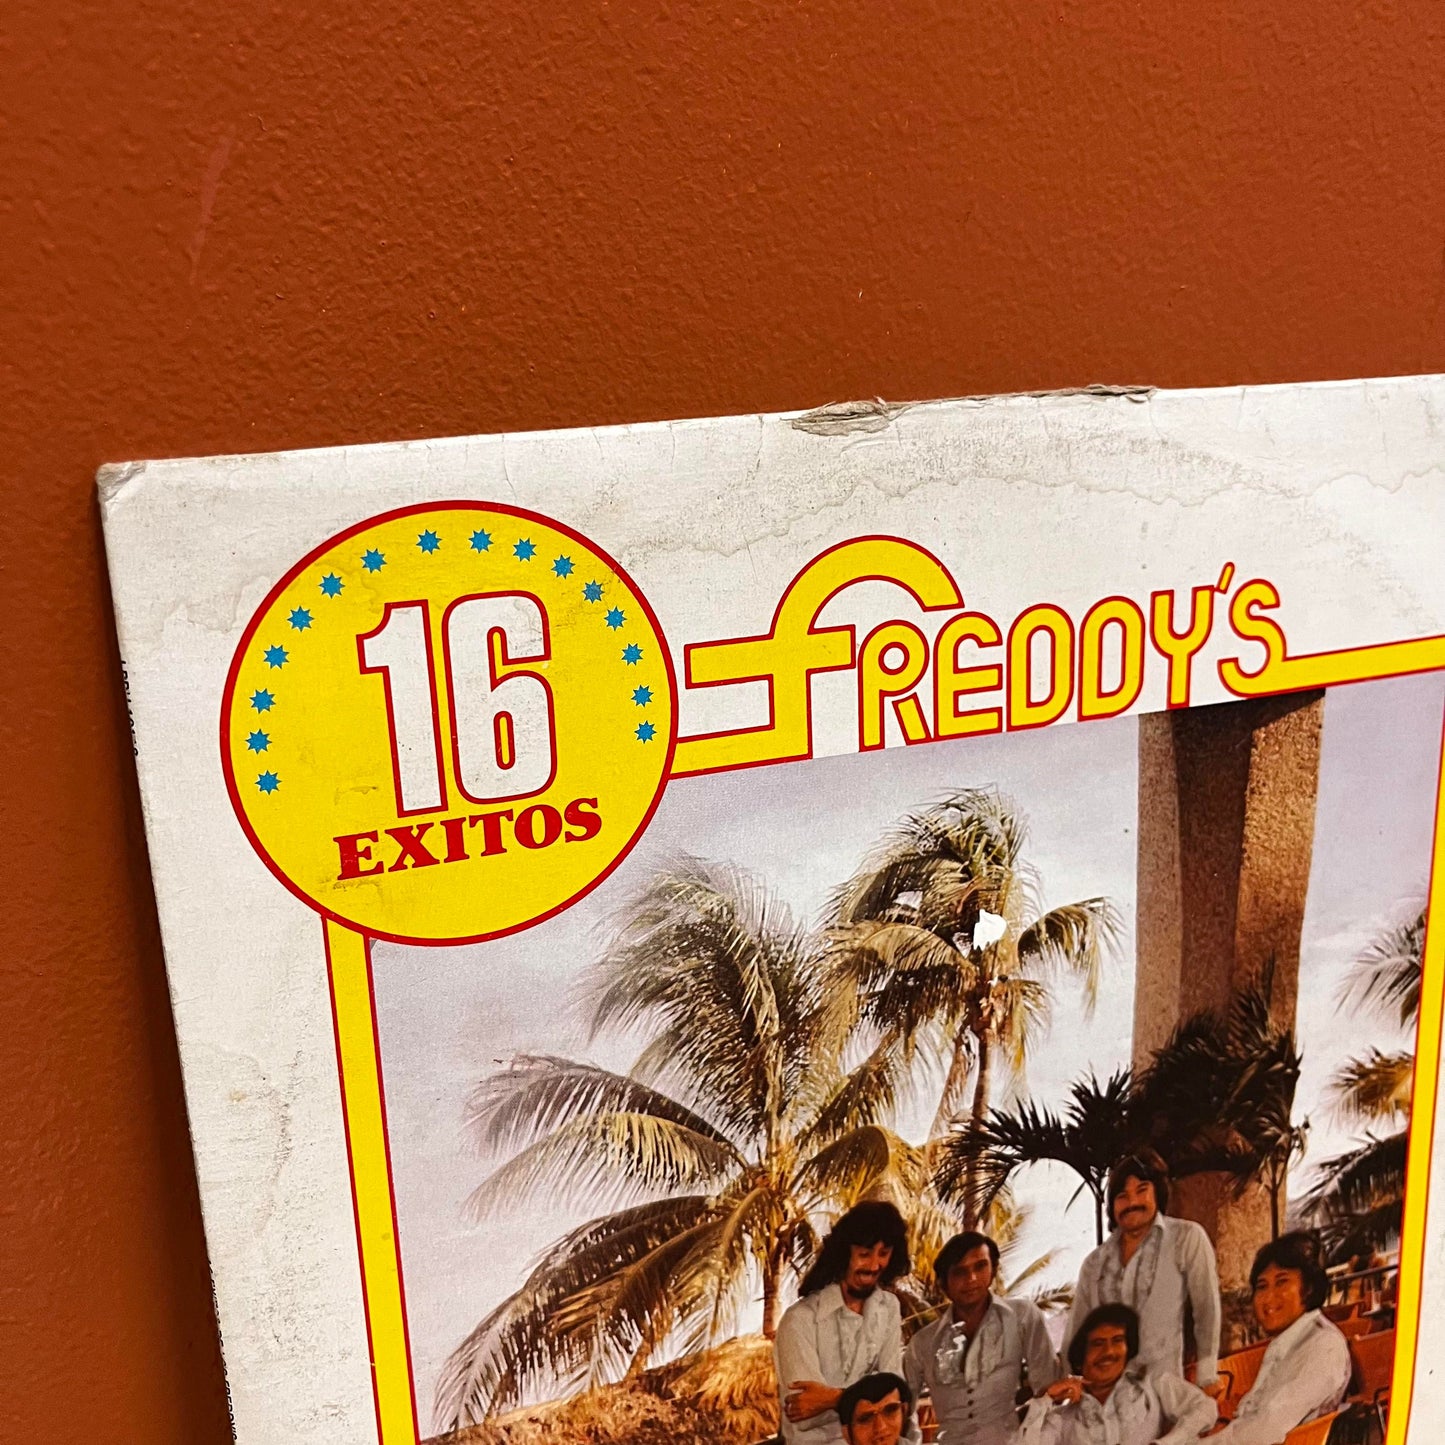 16 Exitos Freddy's - Peerless LPPU-10118 Used Vinyl